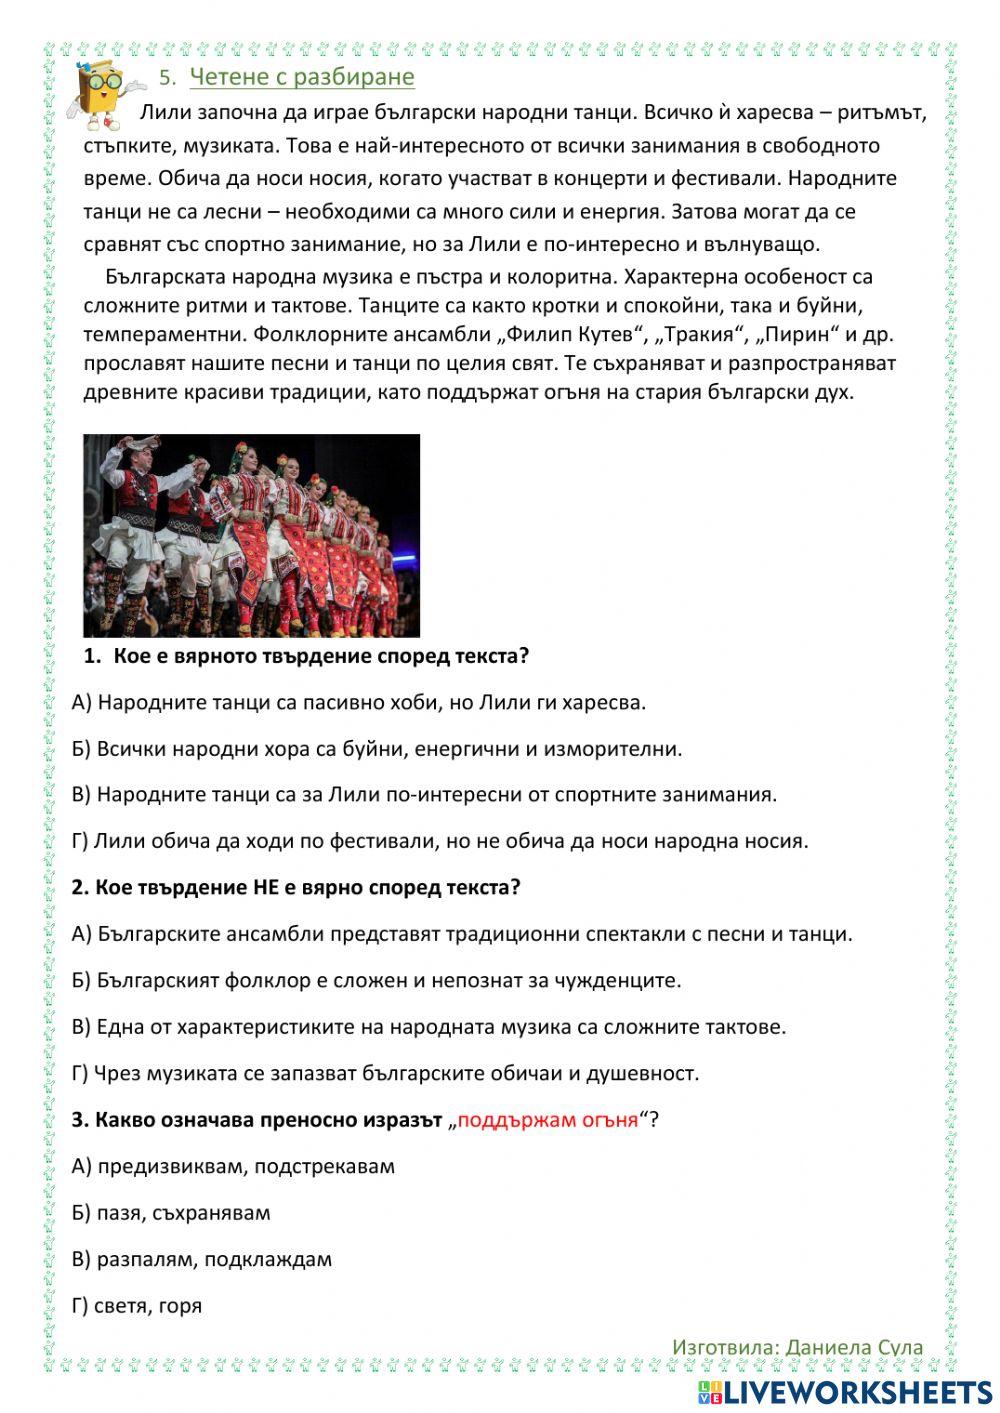 Български като втори език - упражнения за 6 клас